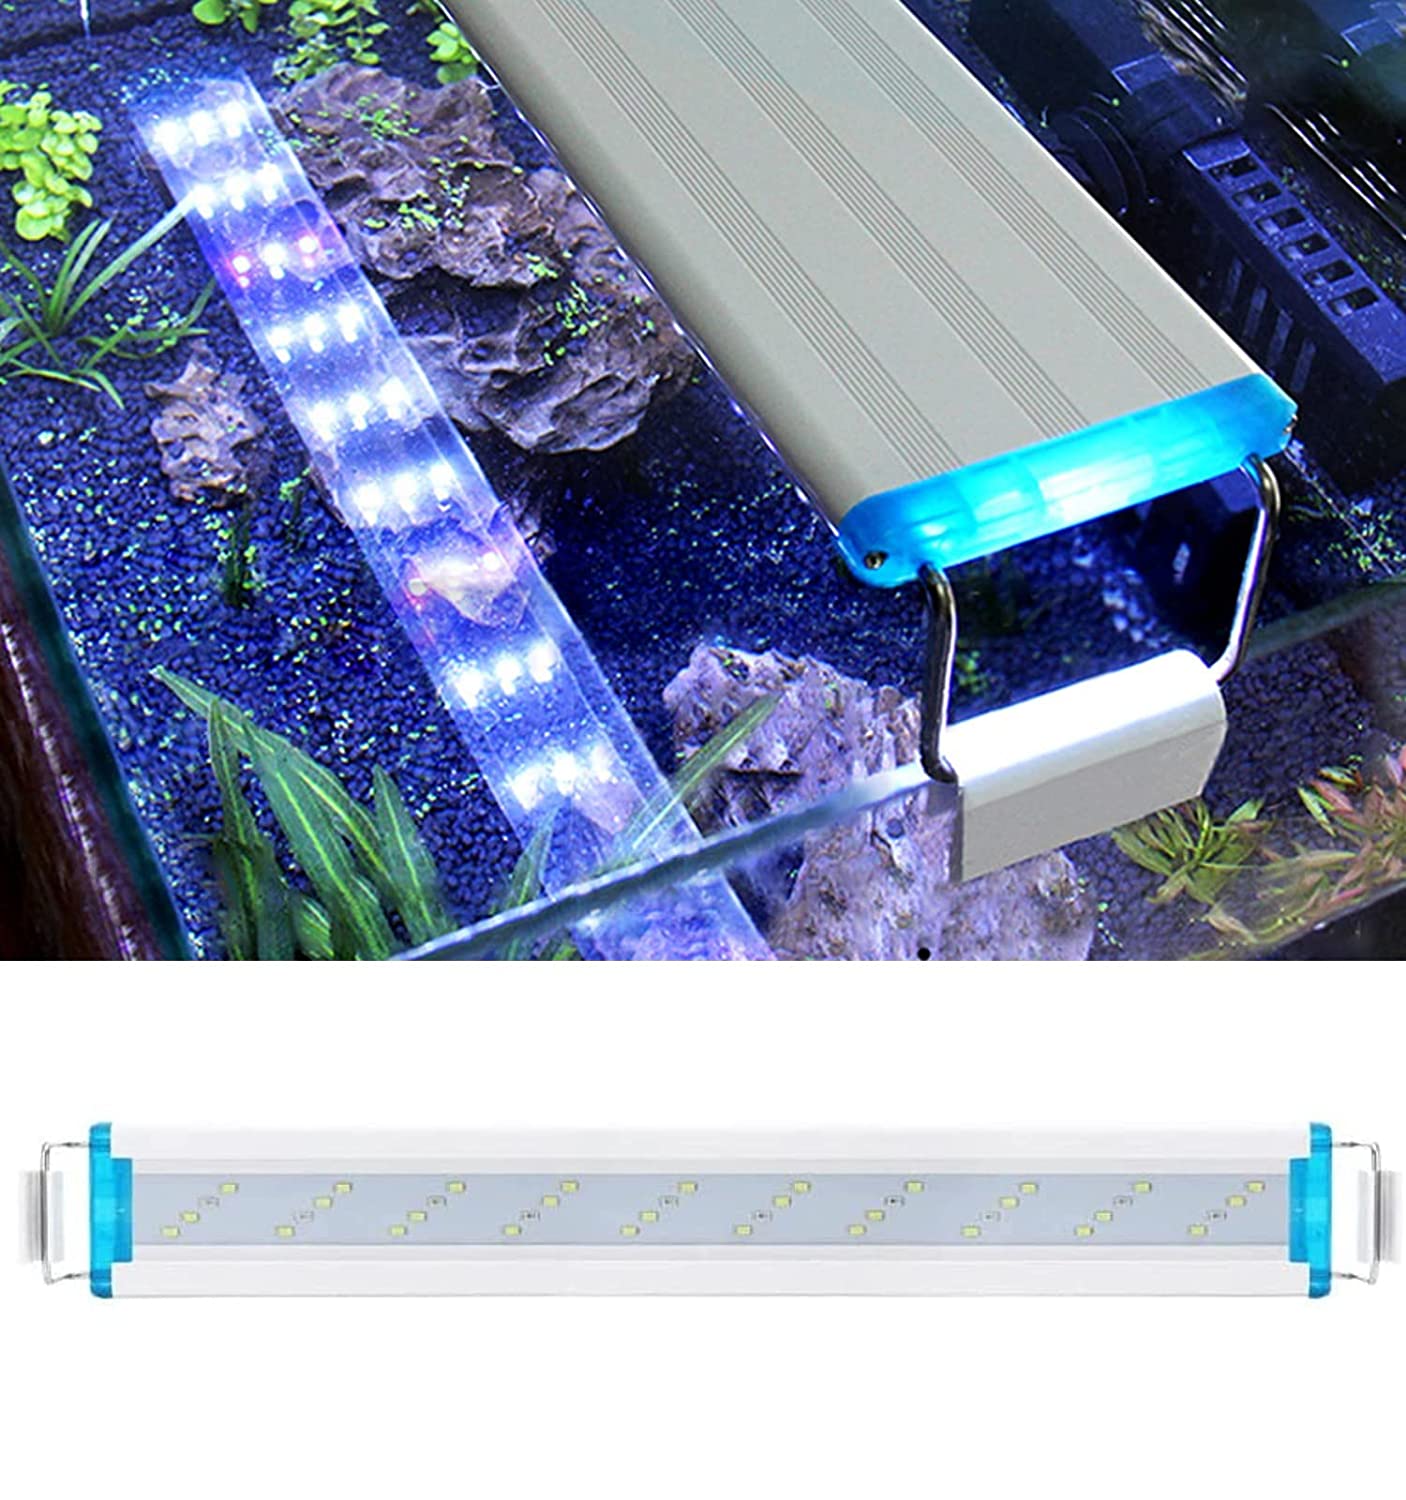 Despacito Glass Aquarium LED Light for Planted Fish Tank, Light Lamp for Aquarium